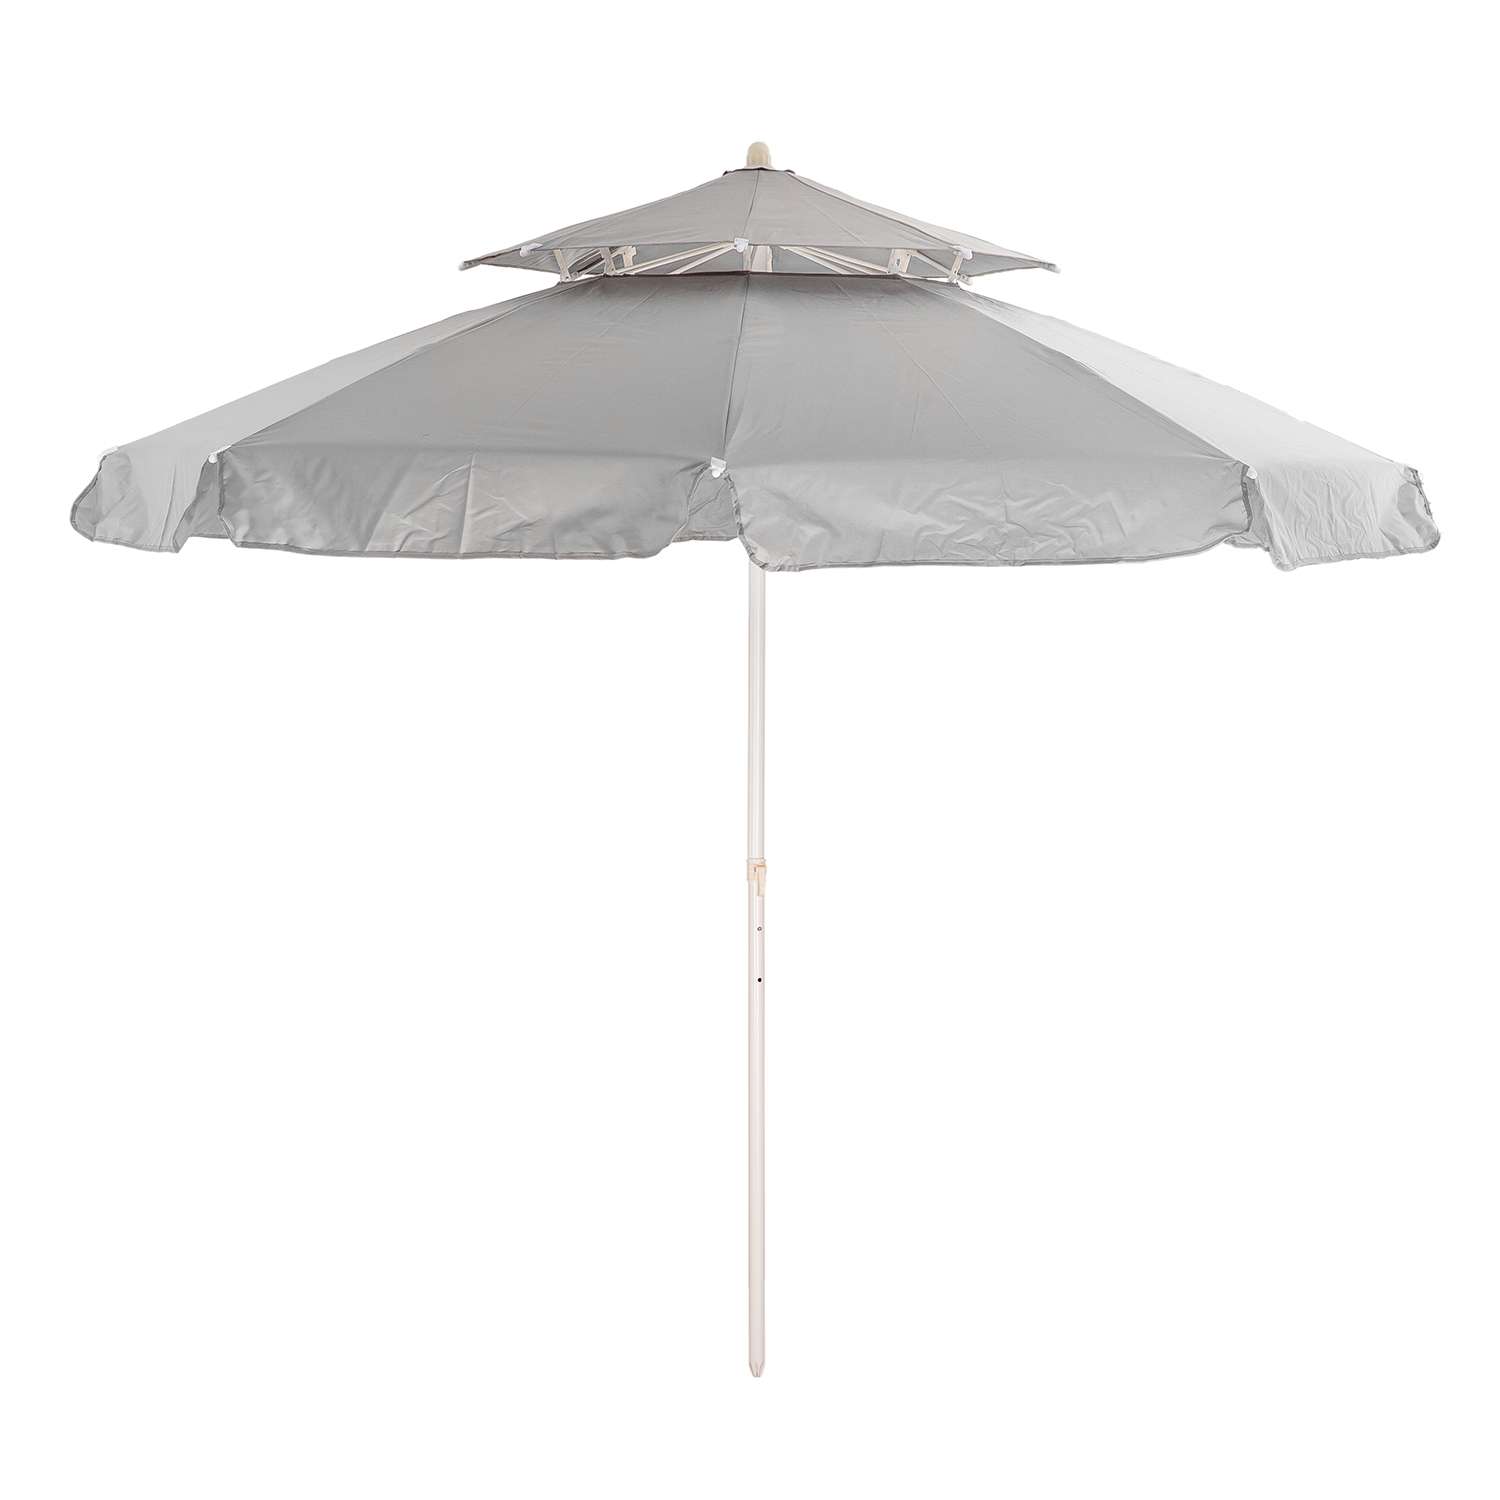 Зонт пляжный BABY STYLE большой от солнца туристический с клапаном 2.15м ткань бахрома серый - фото 1